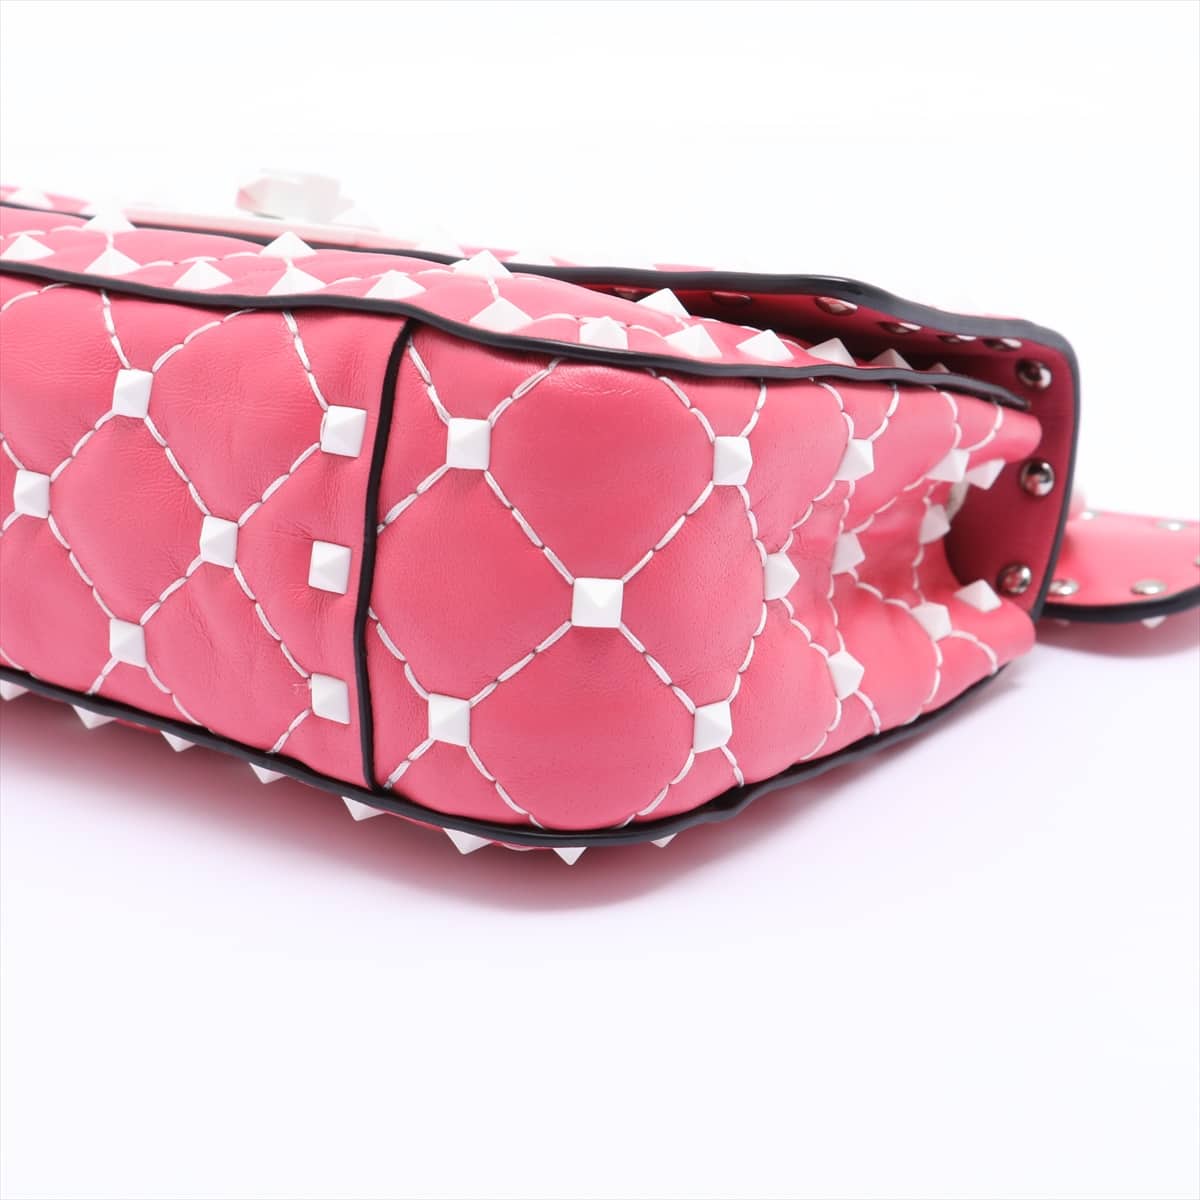 Valentino Garavani Rock Stud Spike Leather 2way shoulder bag Pink